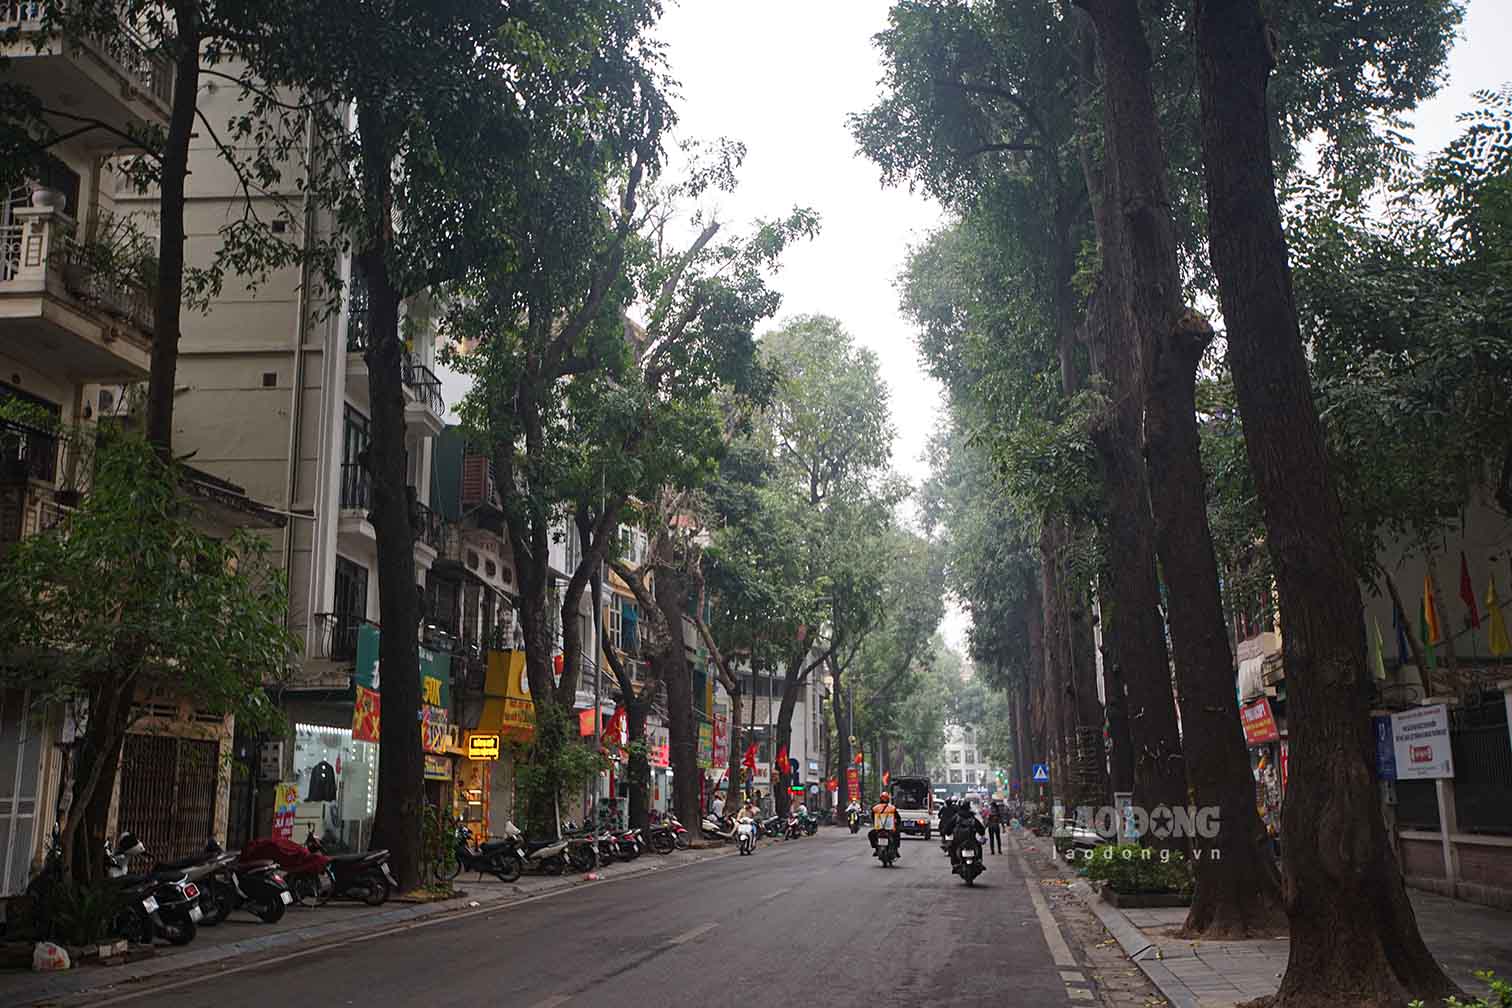 Hàng cây sao đen trên phố Lò Đúc (quận Hai Bà Trưng, Hà Nội)  được người Pháp trồng từ đầu thế kỉ XX, có đường kính từ 80-90 cm, cao khoảng 20 m, thân cao vút thẳng đứng, tán lá xanh tươi tỏa bóng. 